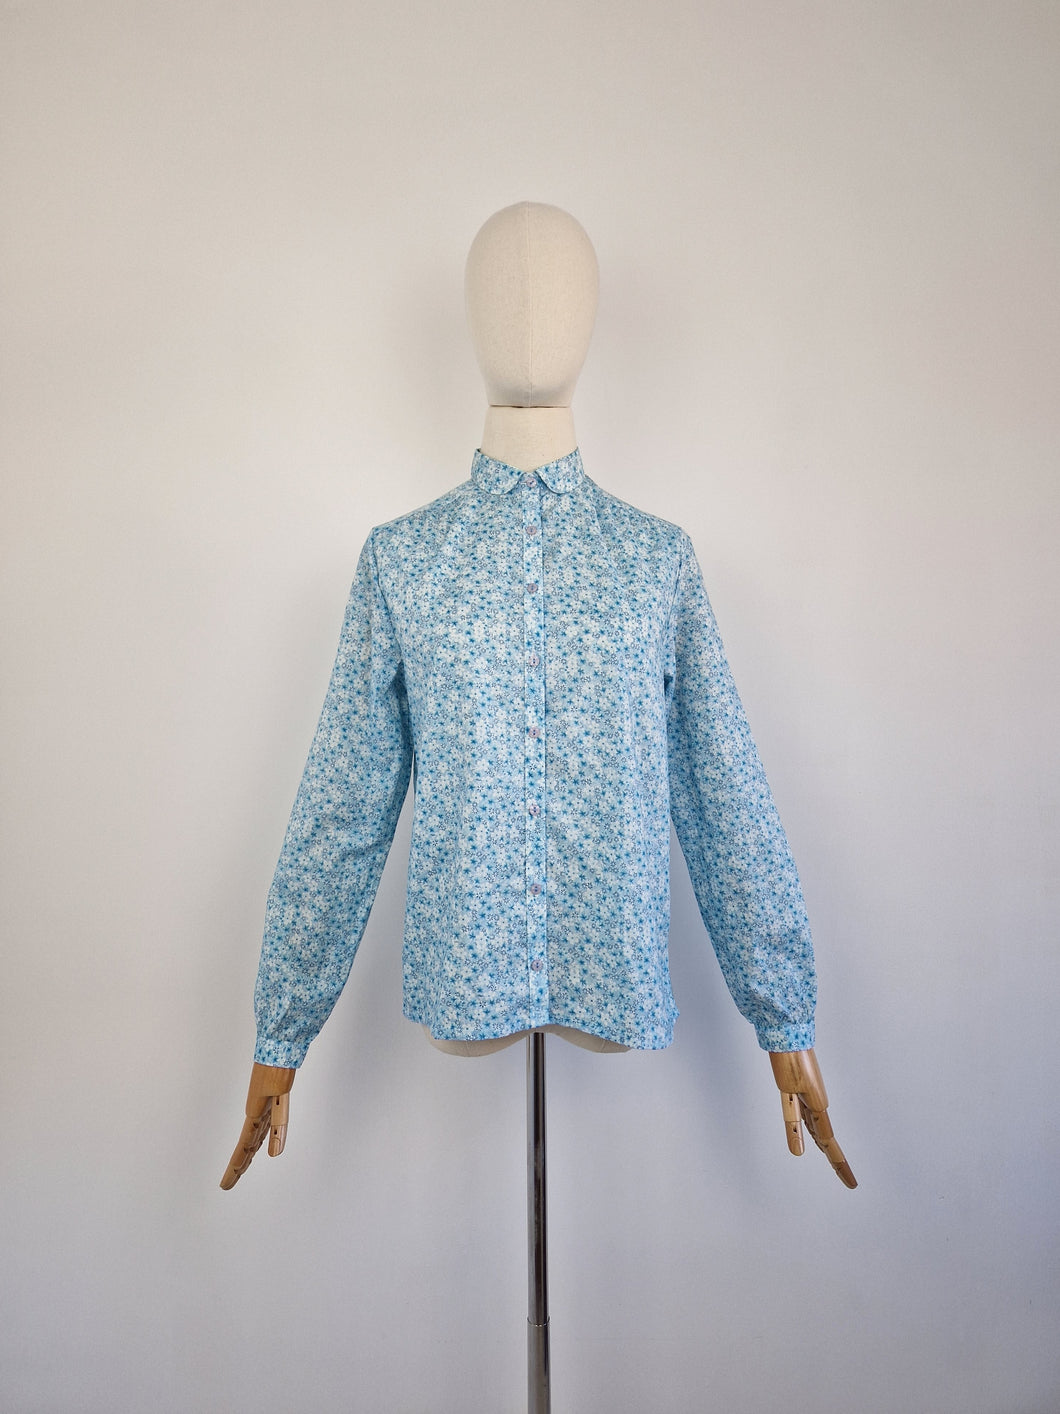 Vintage 80s deadstock St Michael cotton blouse